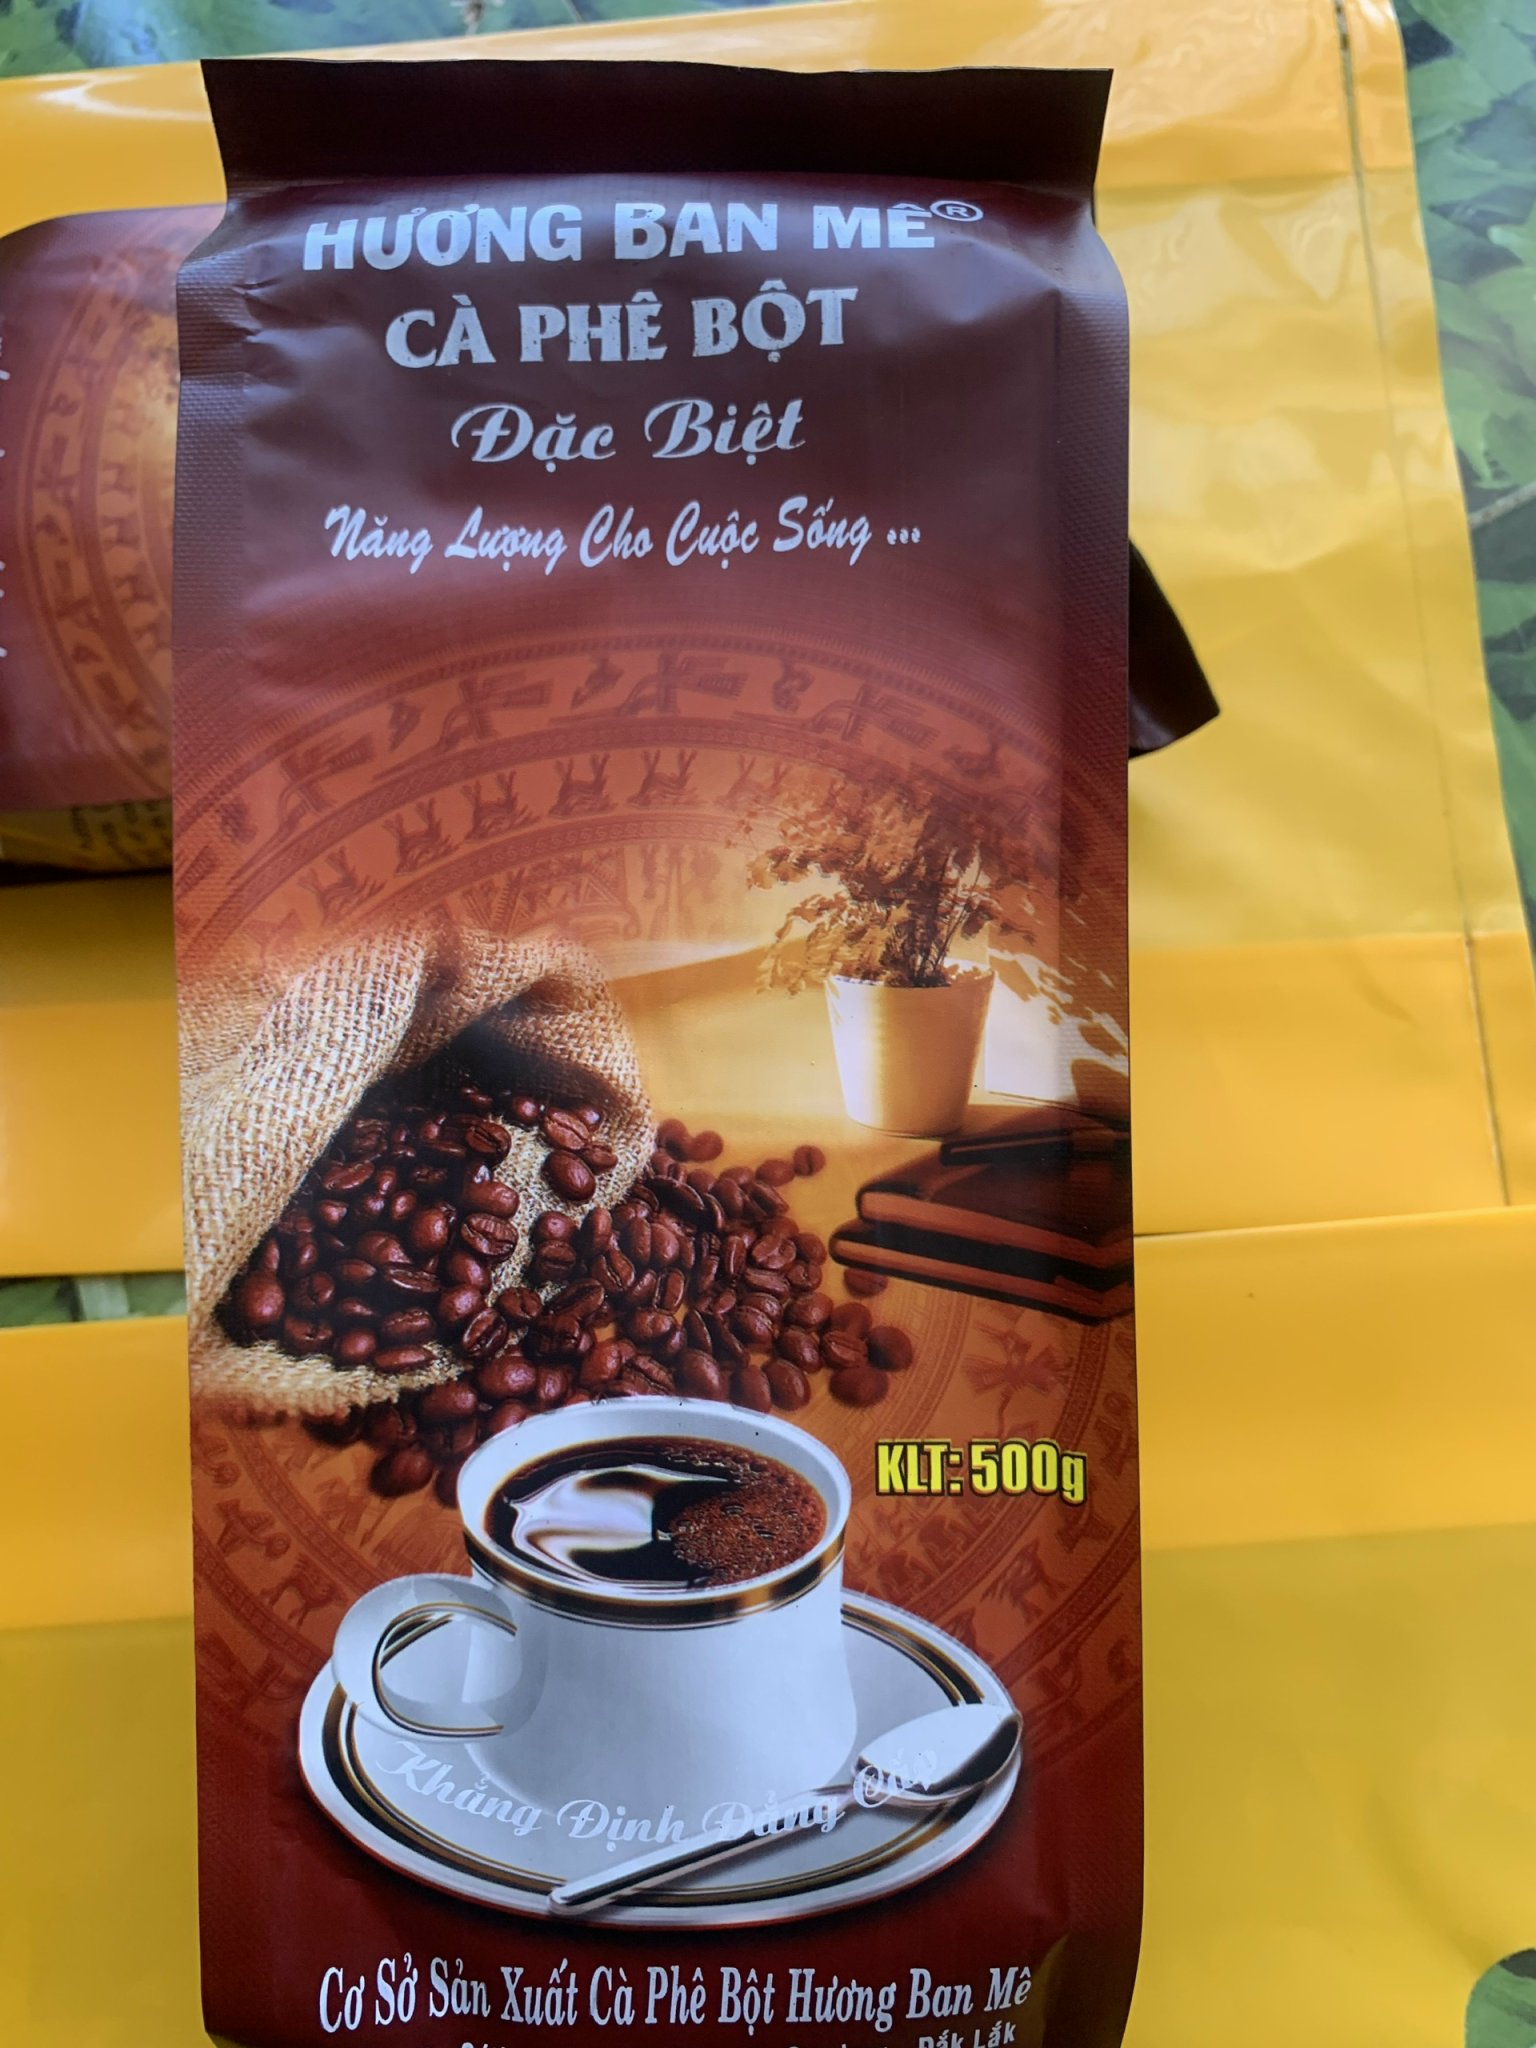 SALE SỐC NHIỆT Cà phê sạch-Cà phê nguyên chất HƯƠNG BAN MÊ thượng hạng thơm đặc biệt - pha phin truyền thống- đặc sản ban mê- hương vị đậm đà- gói 500gr